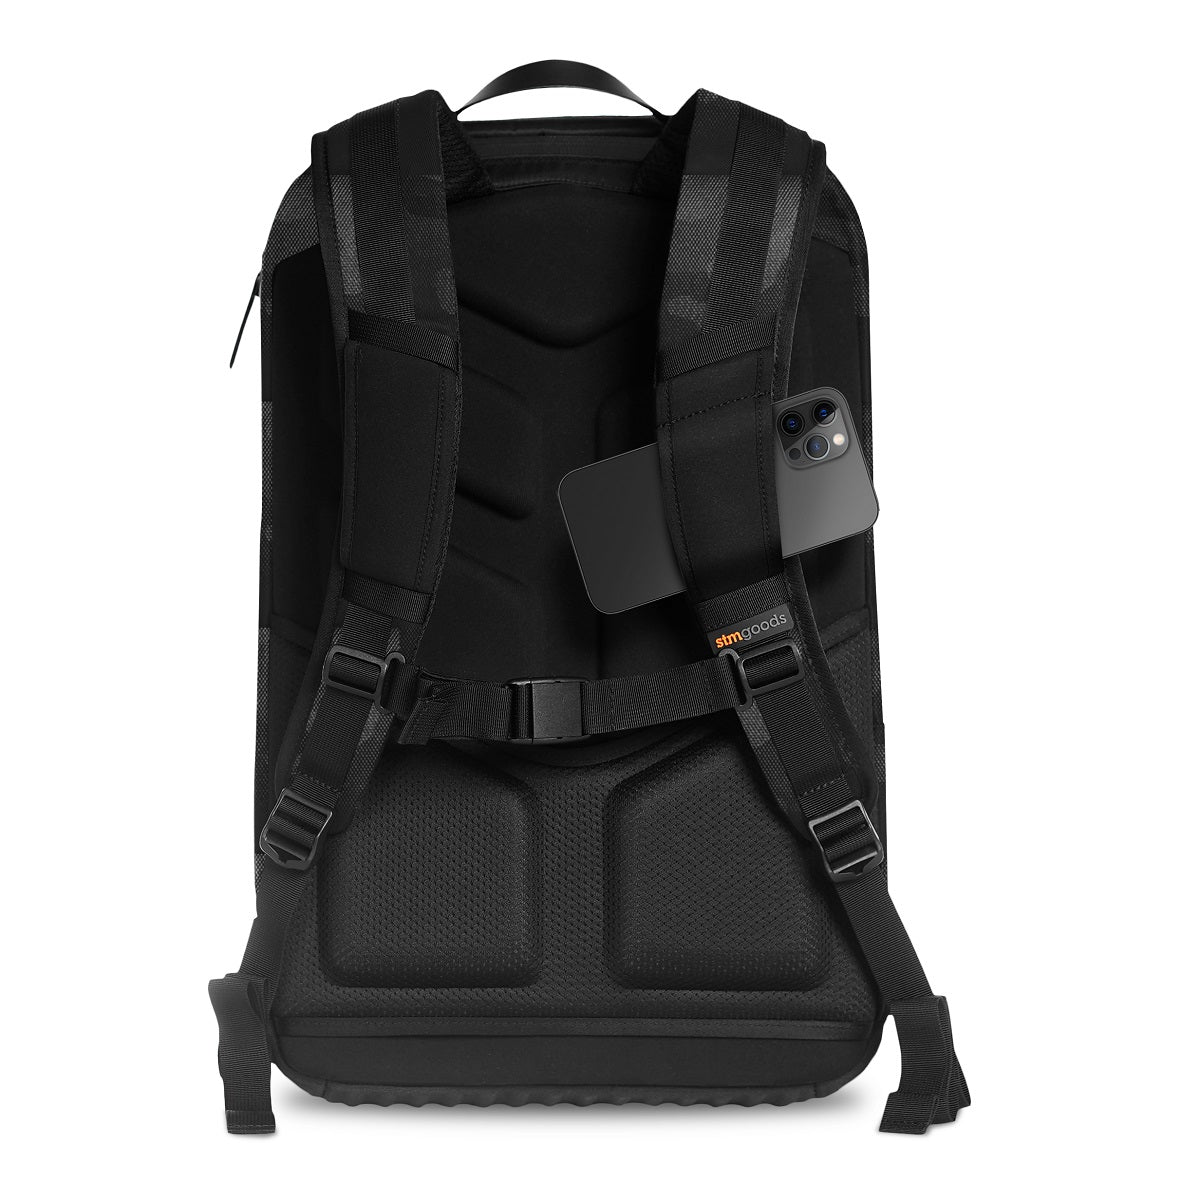 stm-dux-backpack-black-camo-shoulder-straps_29d8ef7d-5583-48a8-938a-87de6c584536.jpg